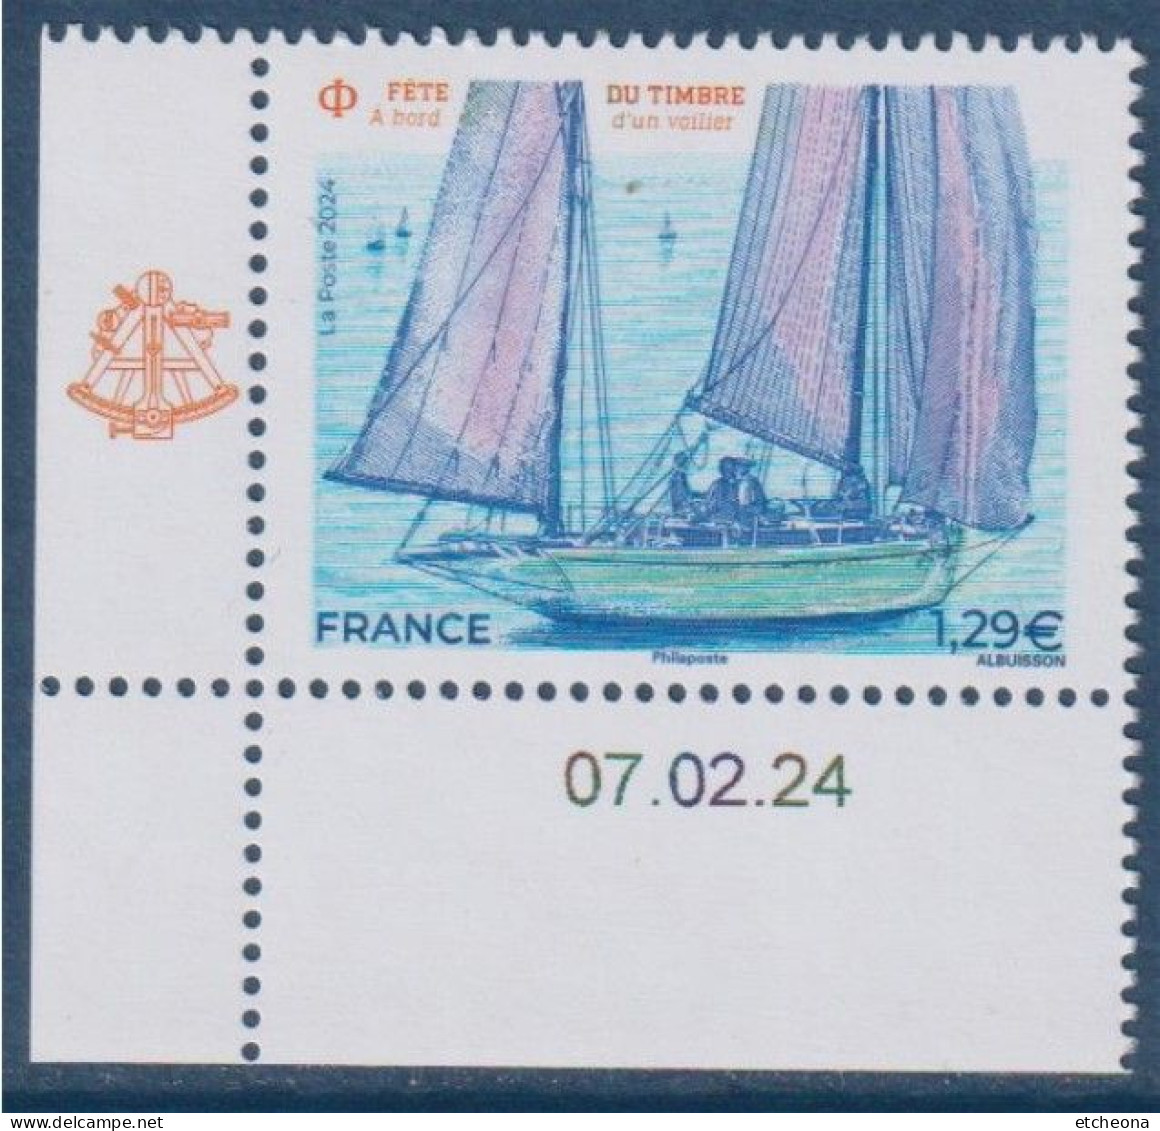 Fête Du Timbre 2024 "A Bord D'un Voilier" En Coin Avec La Date 07.02.24 Neuf Gommé - Stamp's Day